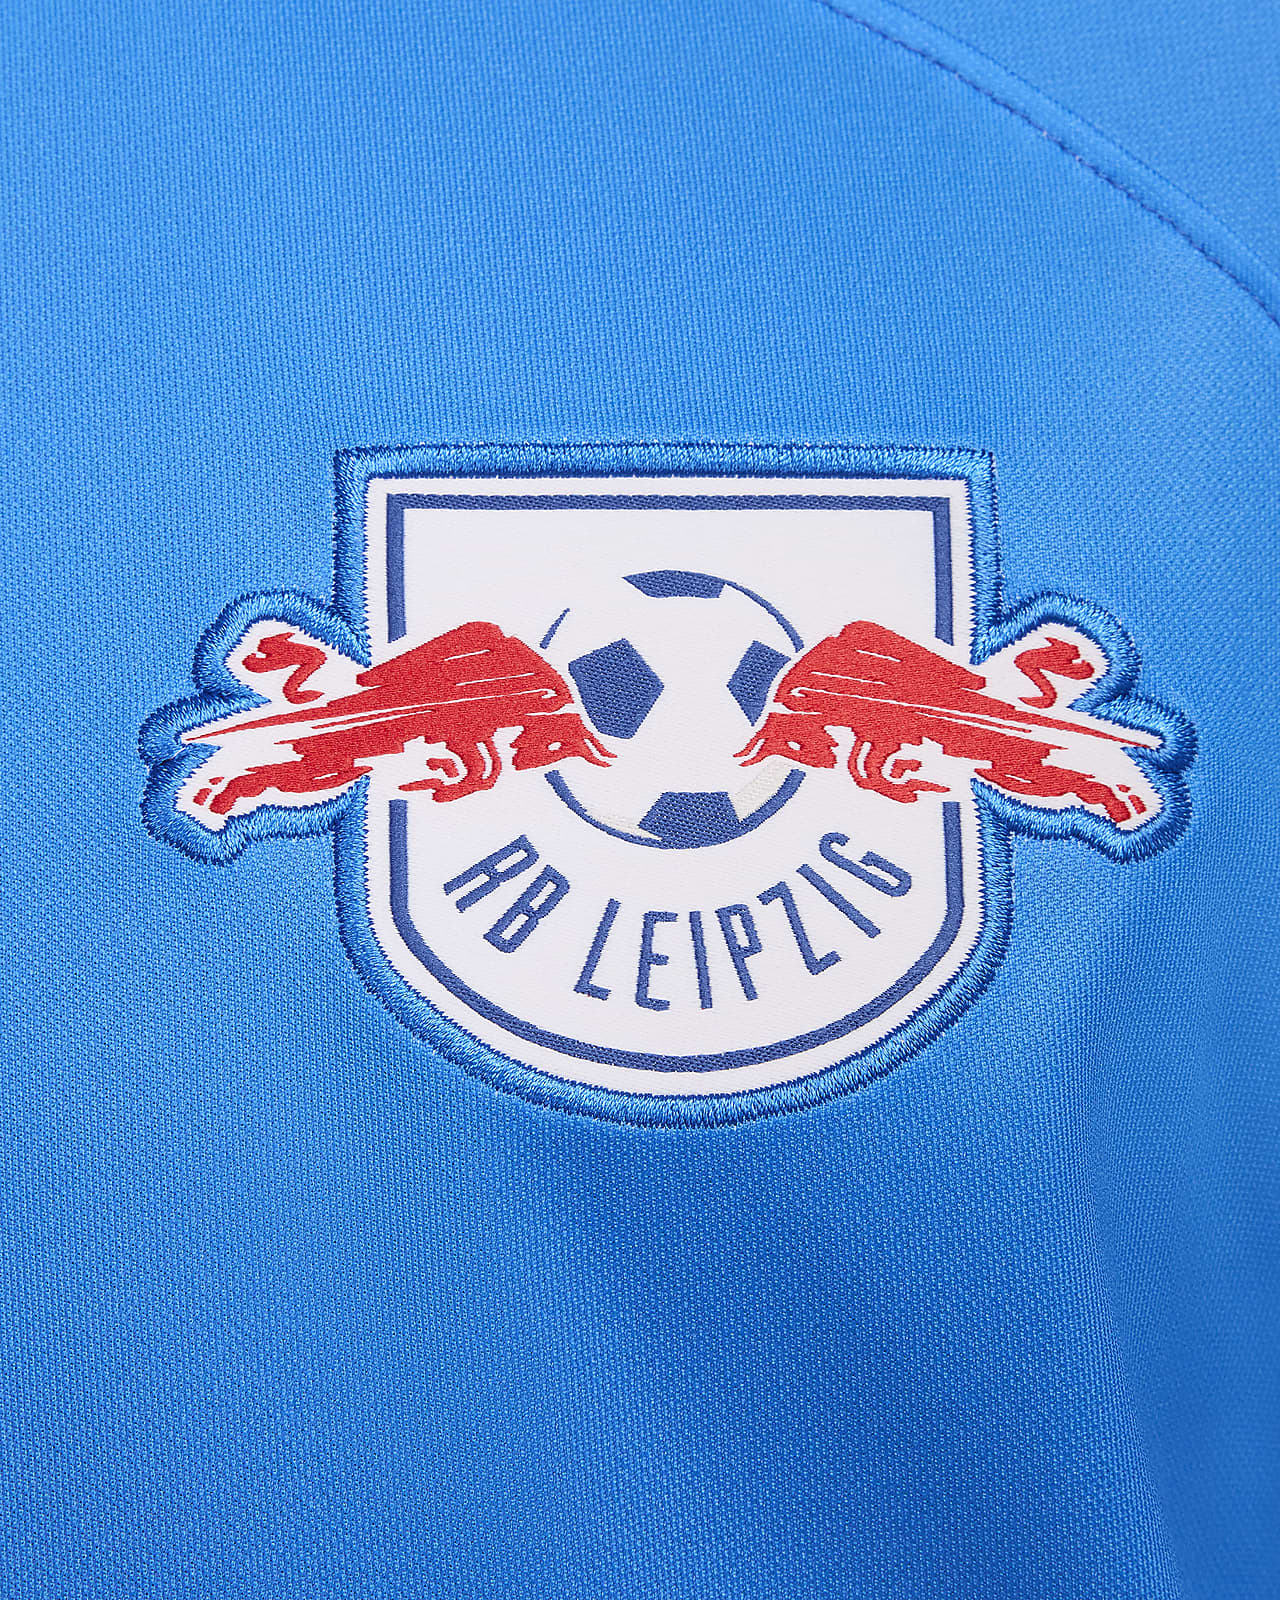 RB Leipzig / Nike Third Kit